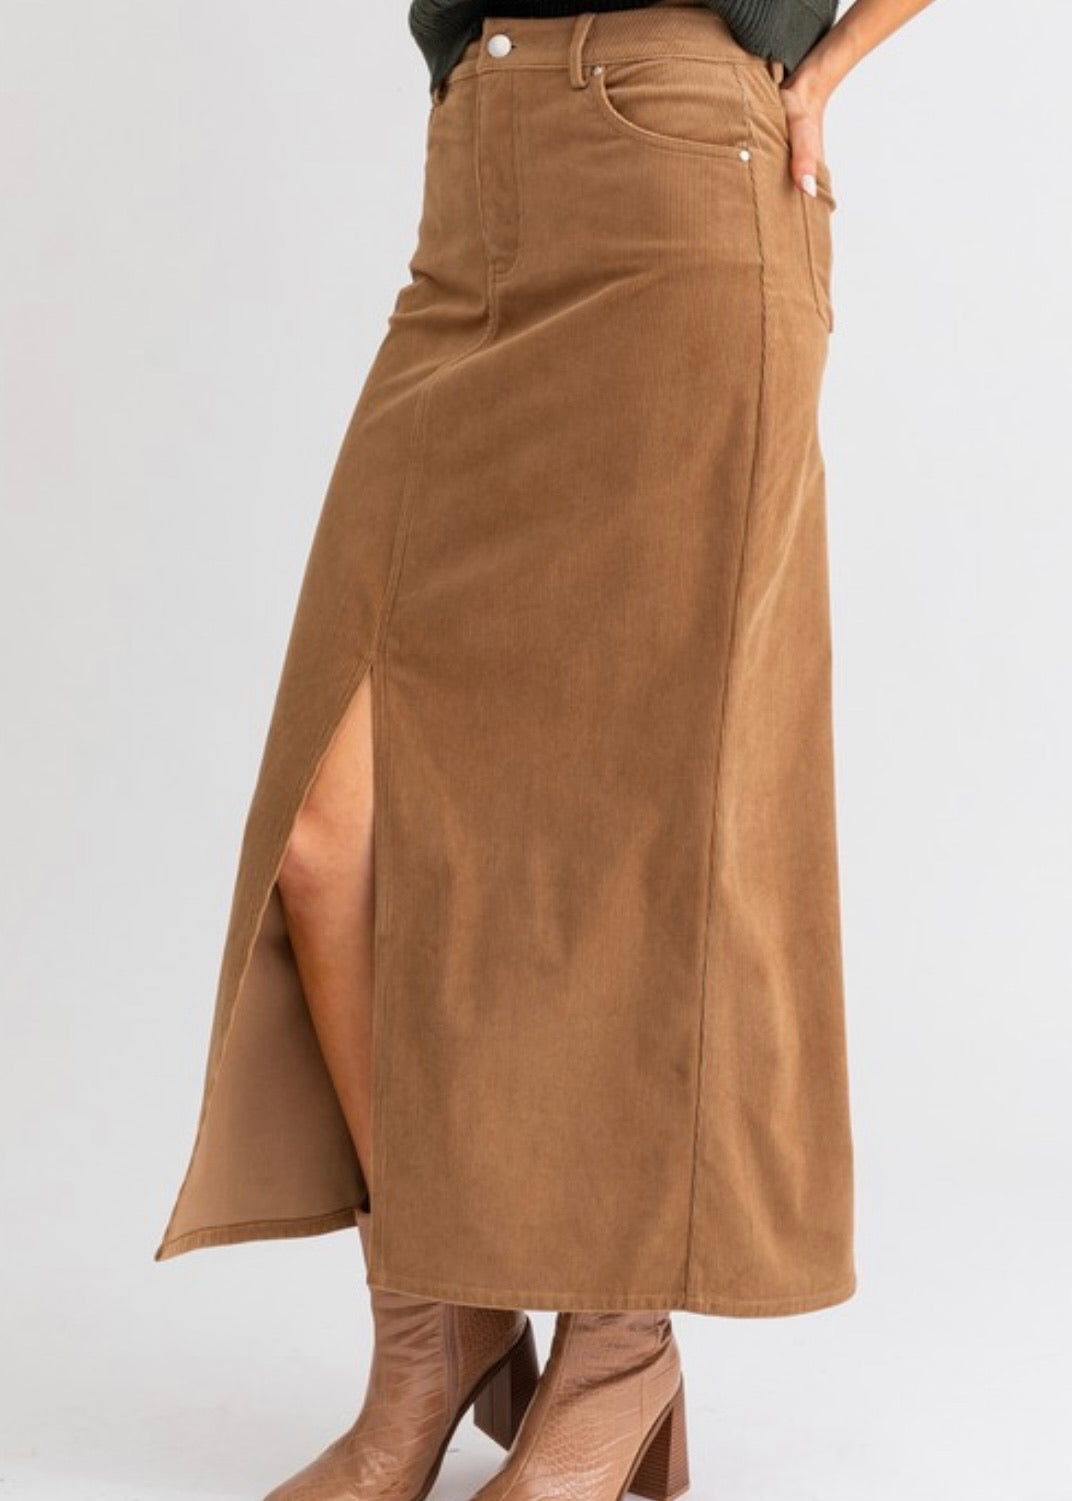 Layla Corduroy Skirt